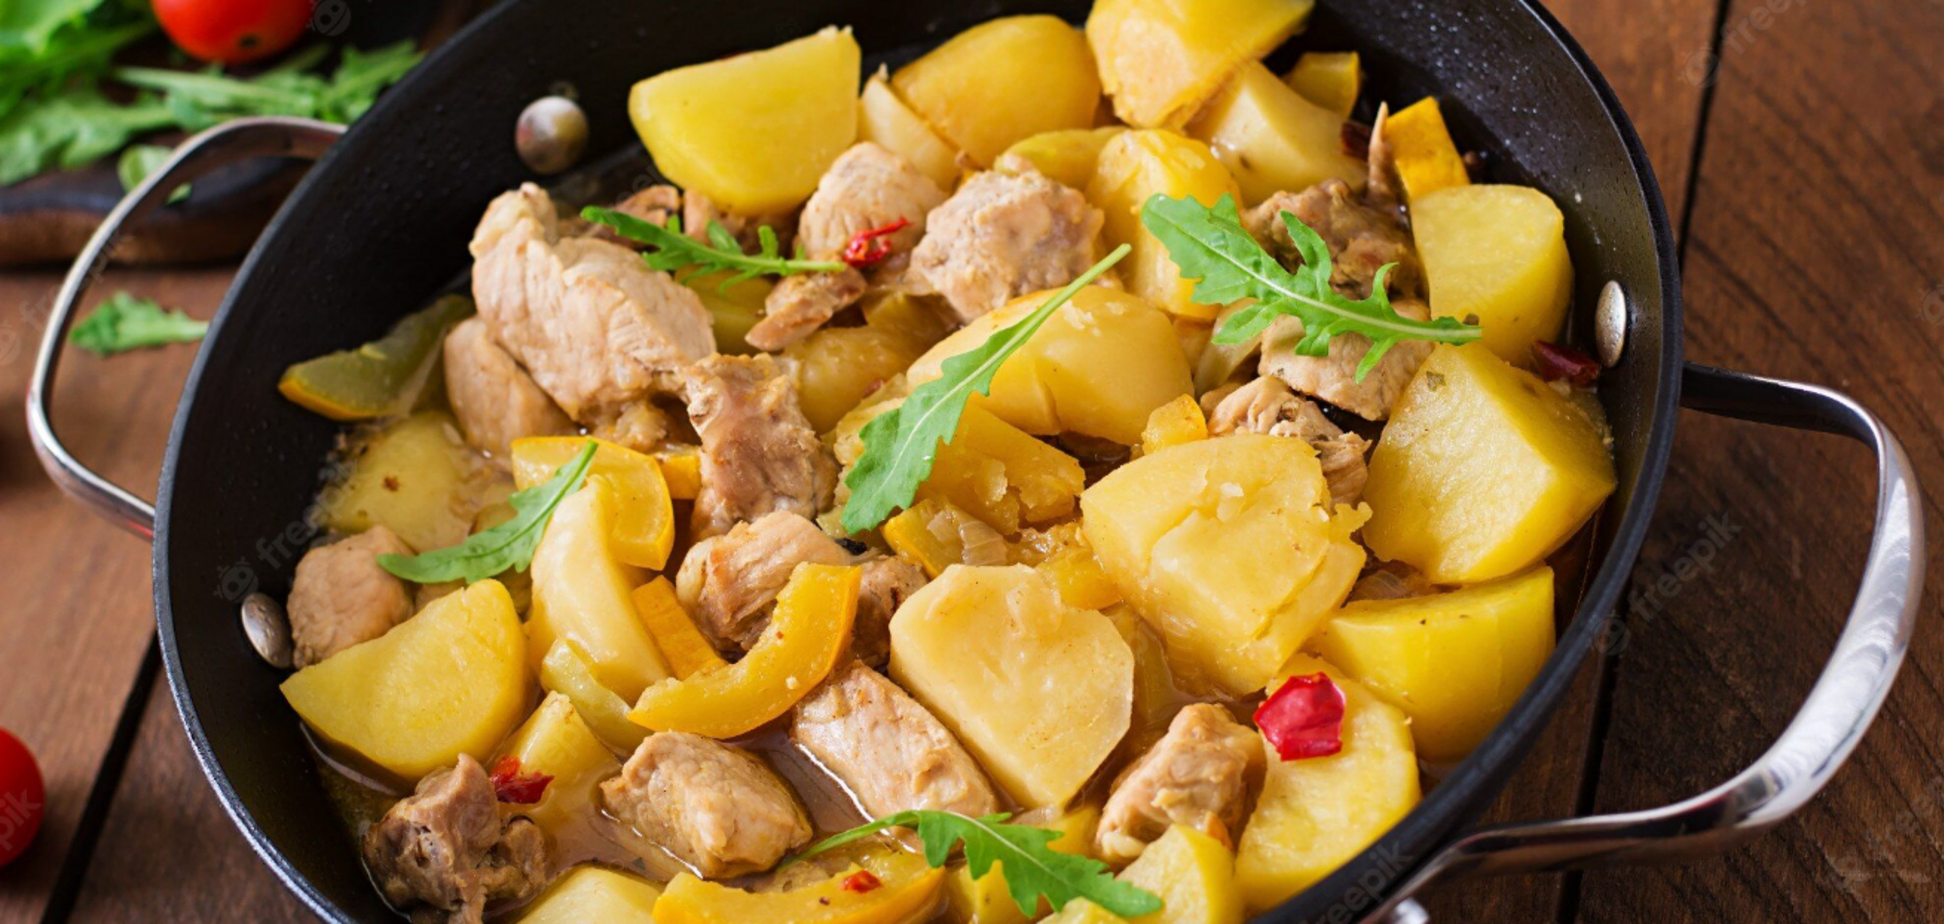 Як смачно та оригінально приготувати тушковану картоплю: найпростіший рецепт